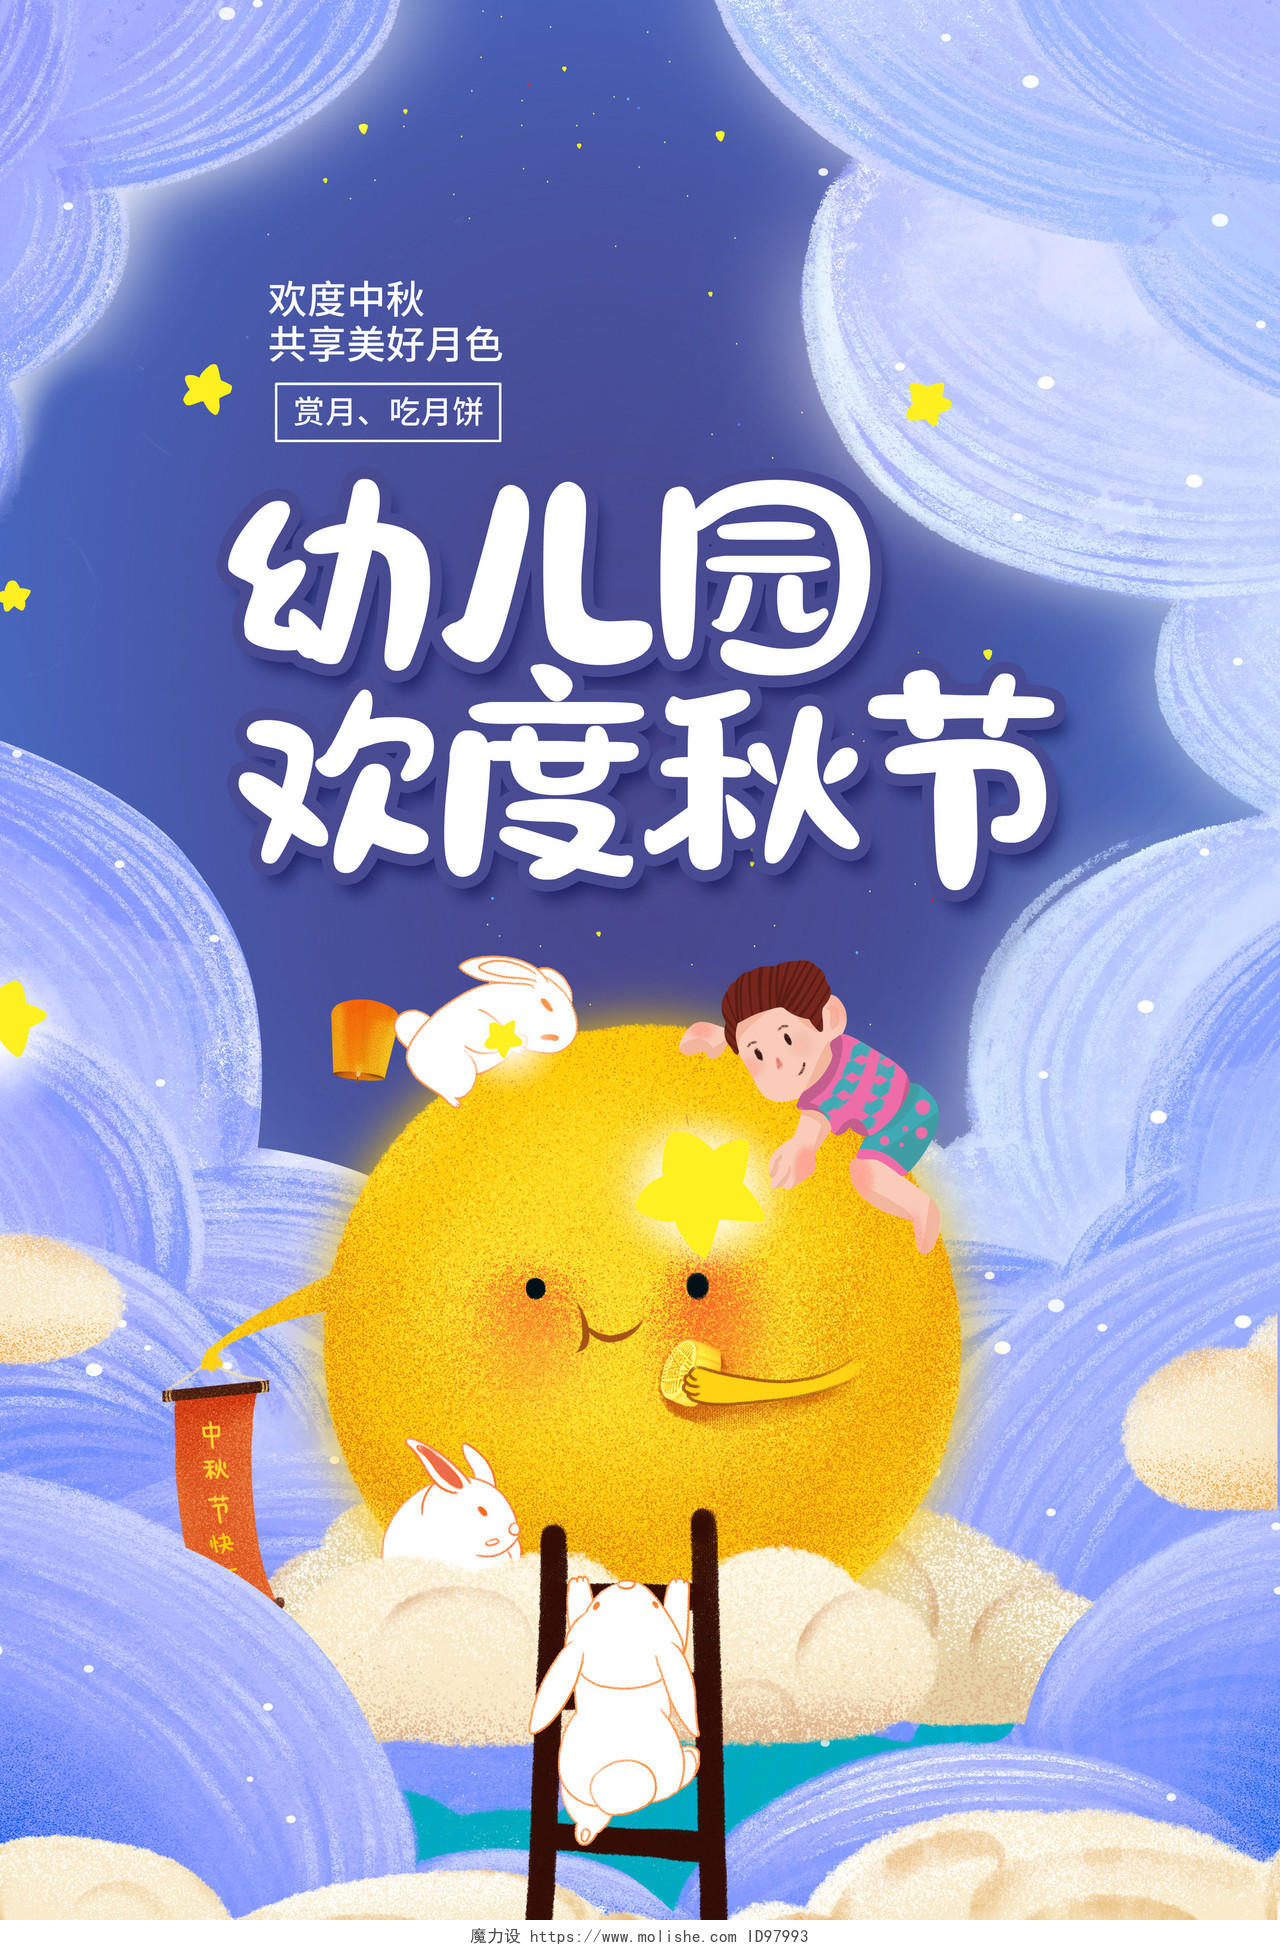 紫色卡通幼儿园欢度中秋中秋节宣传海报设计幼儿园中秋节